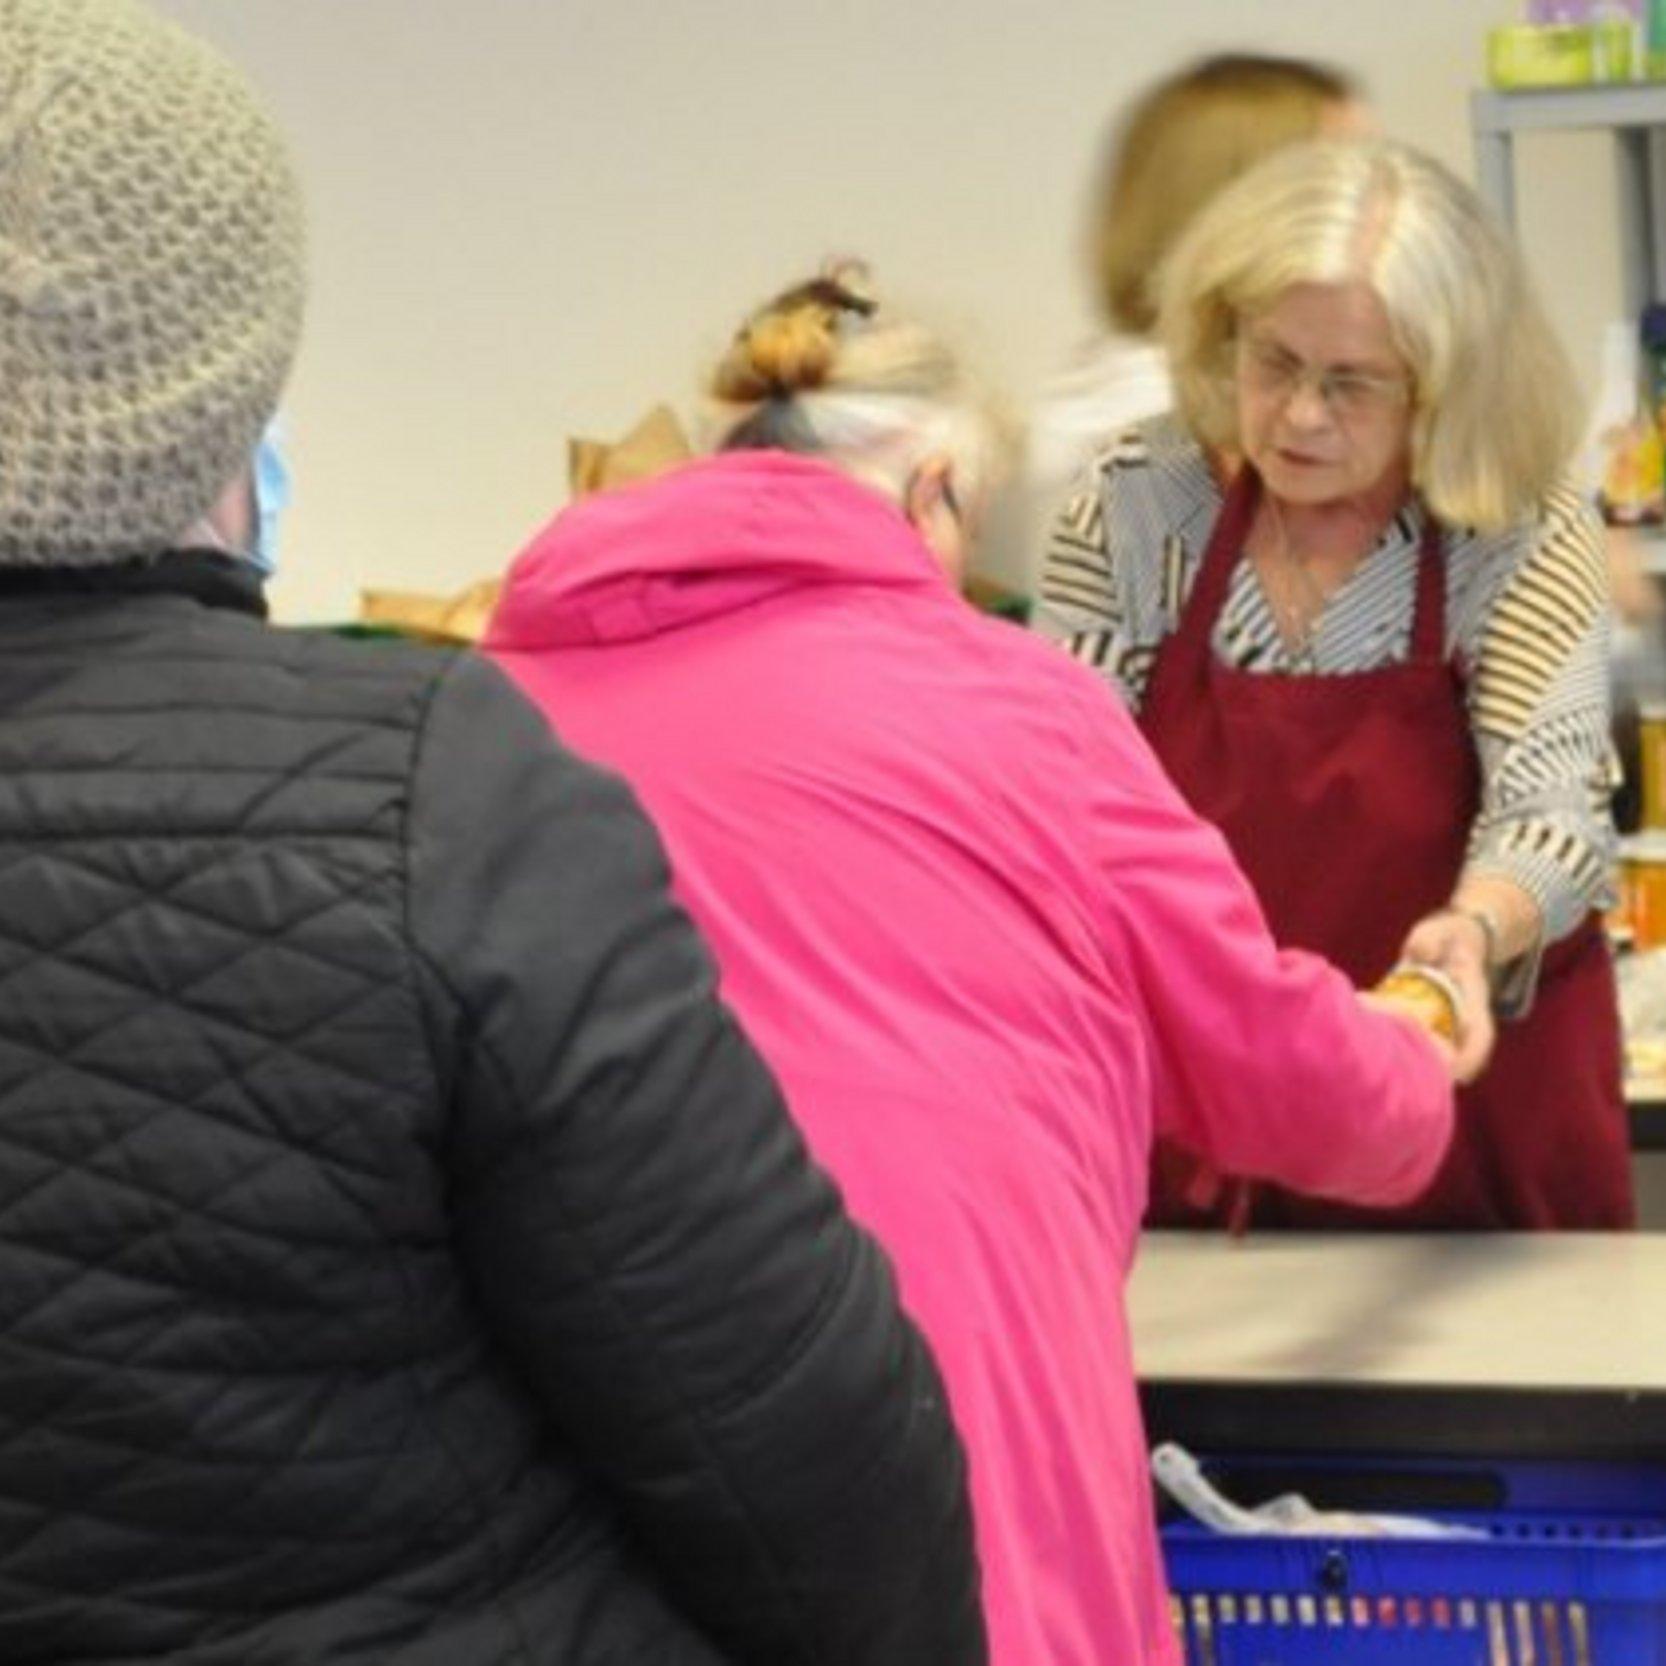 Zwei Frauen holen sich Lebensmittel an der Verkaufstheke ab. In Hintergrund einige kleine Lebensmittelregale